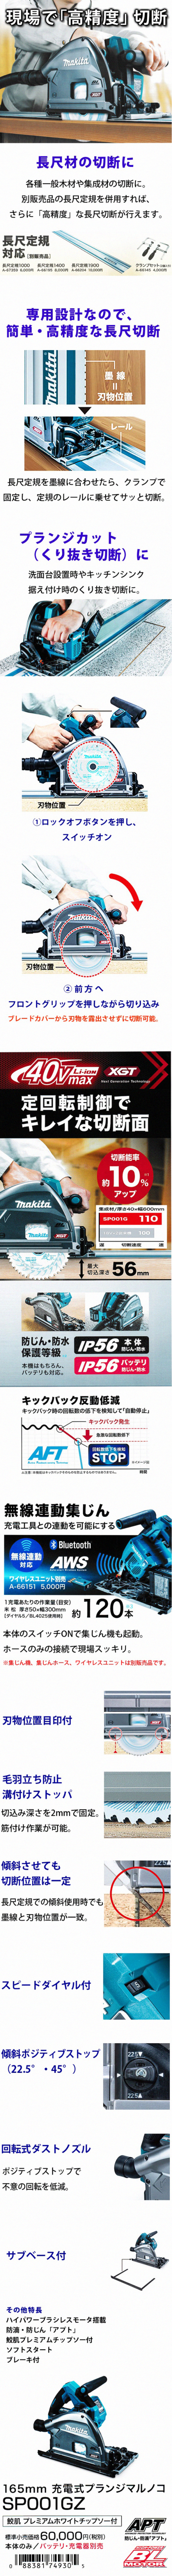 マキタ 40Vmax 165mm充電式プランジマルノコ SP001GZ